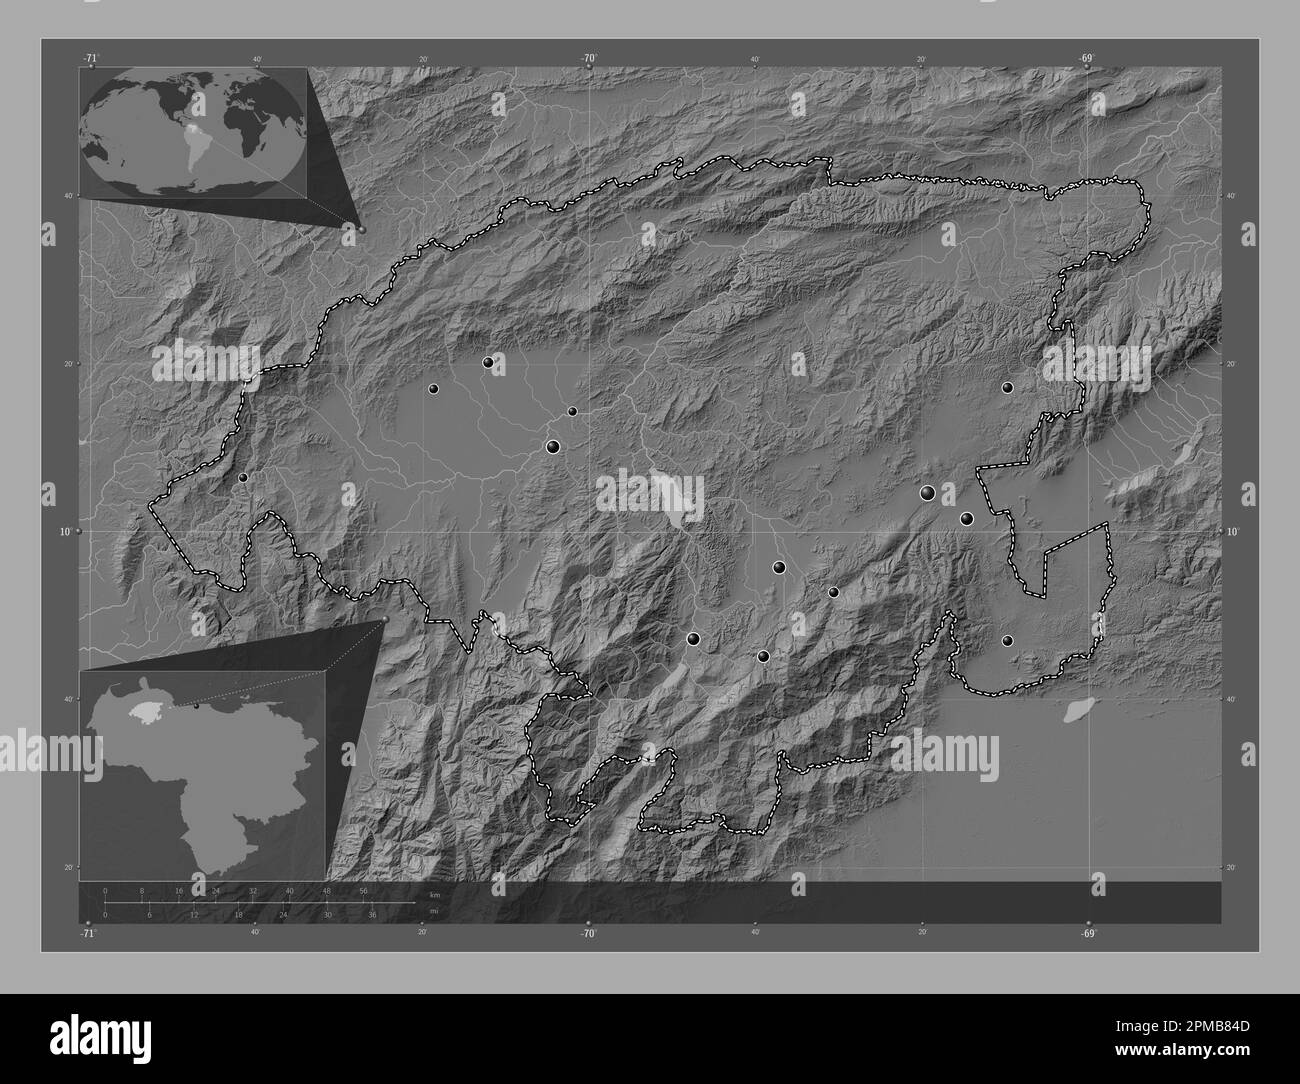 Lara, Staat Venezuela. Bilevel-Höhenkarte mit Seen und Flüssen. Standorte der wichtigsten Städte der Region. Eckkarten für zusätzliche Standorte Stockfoto